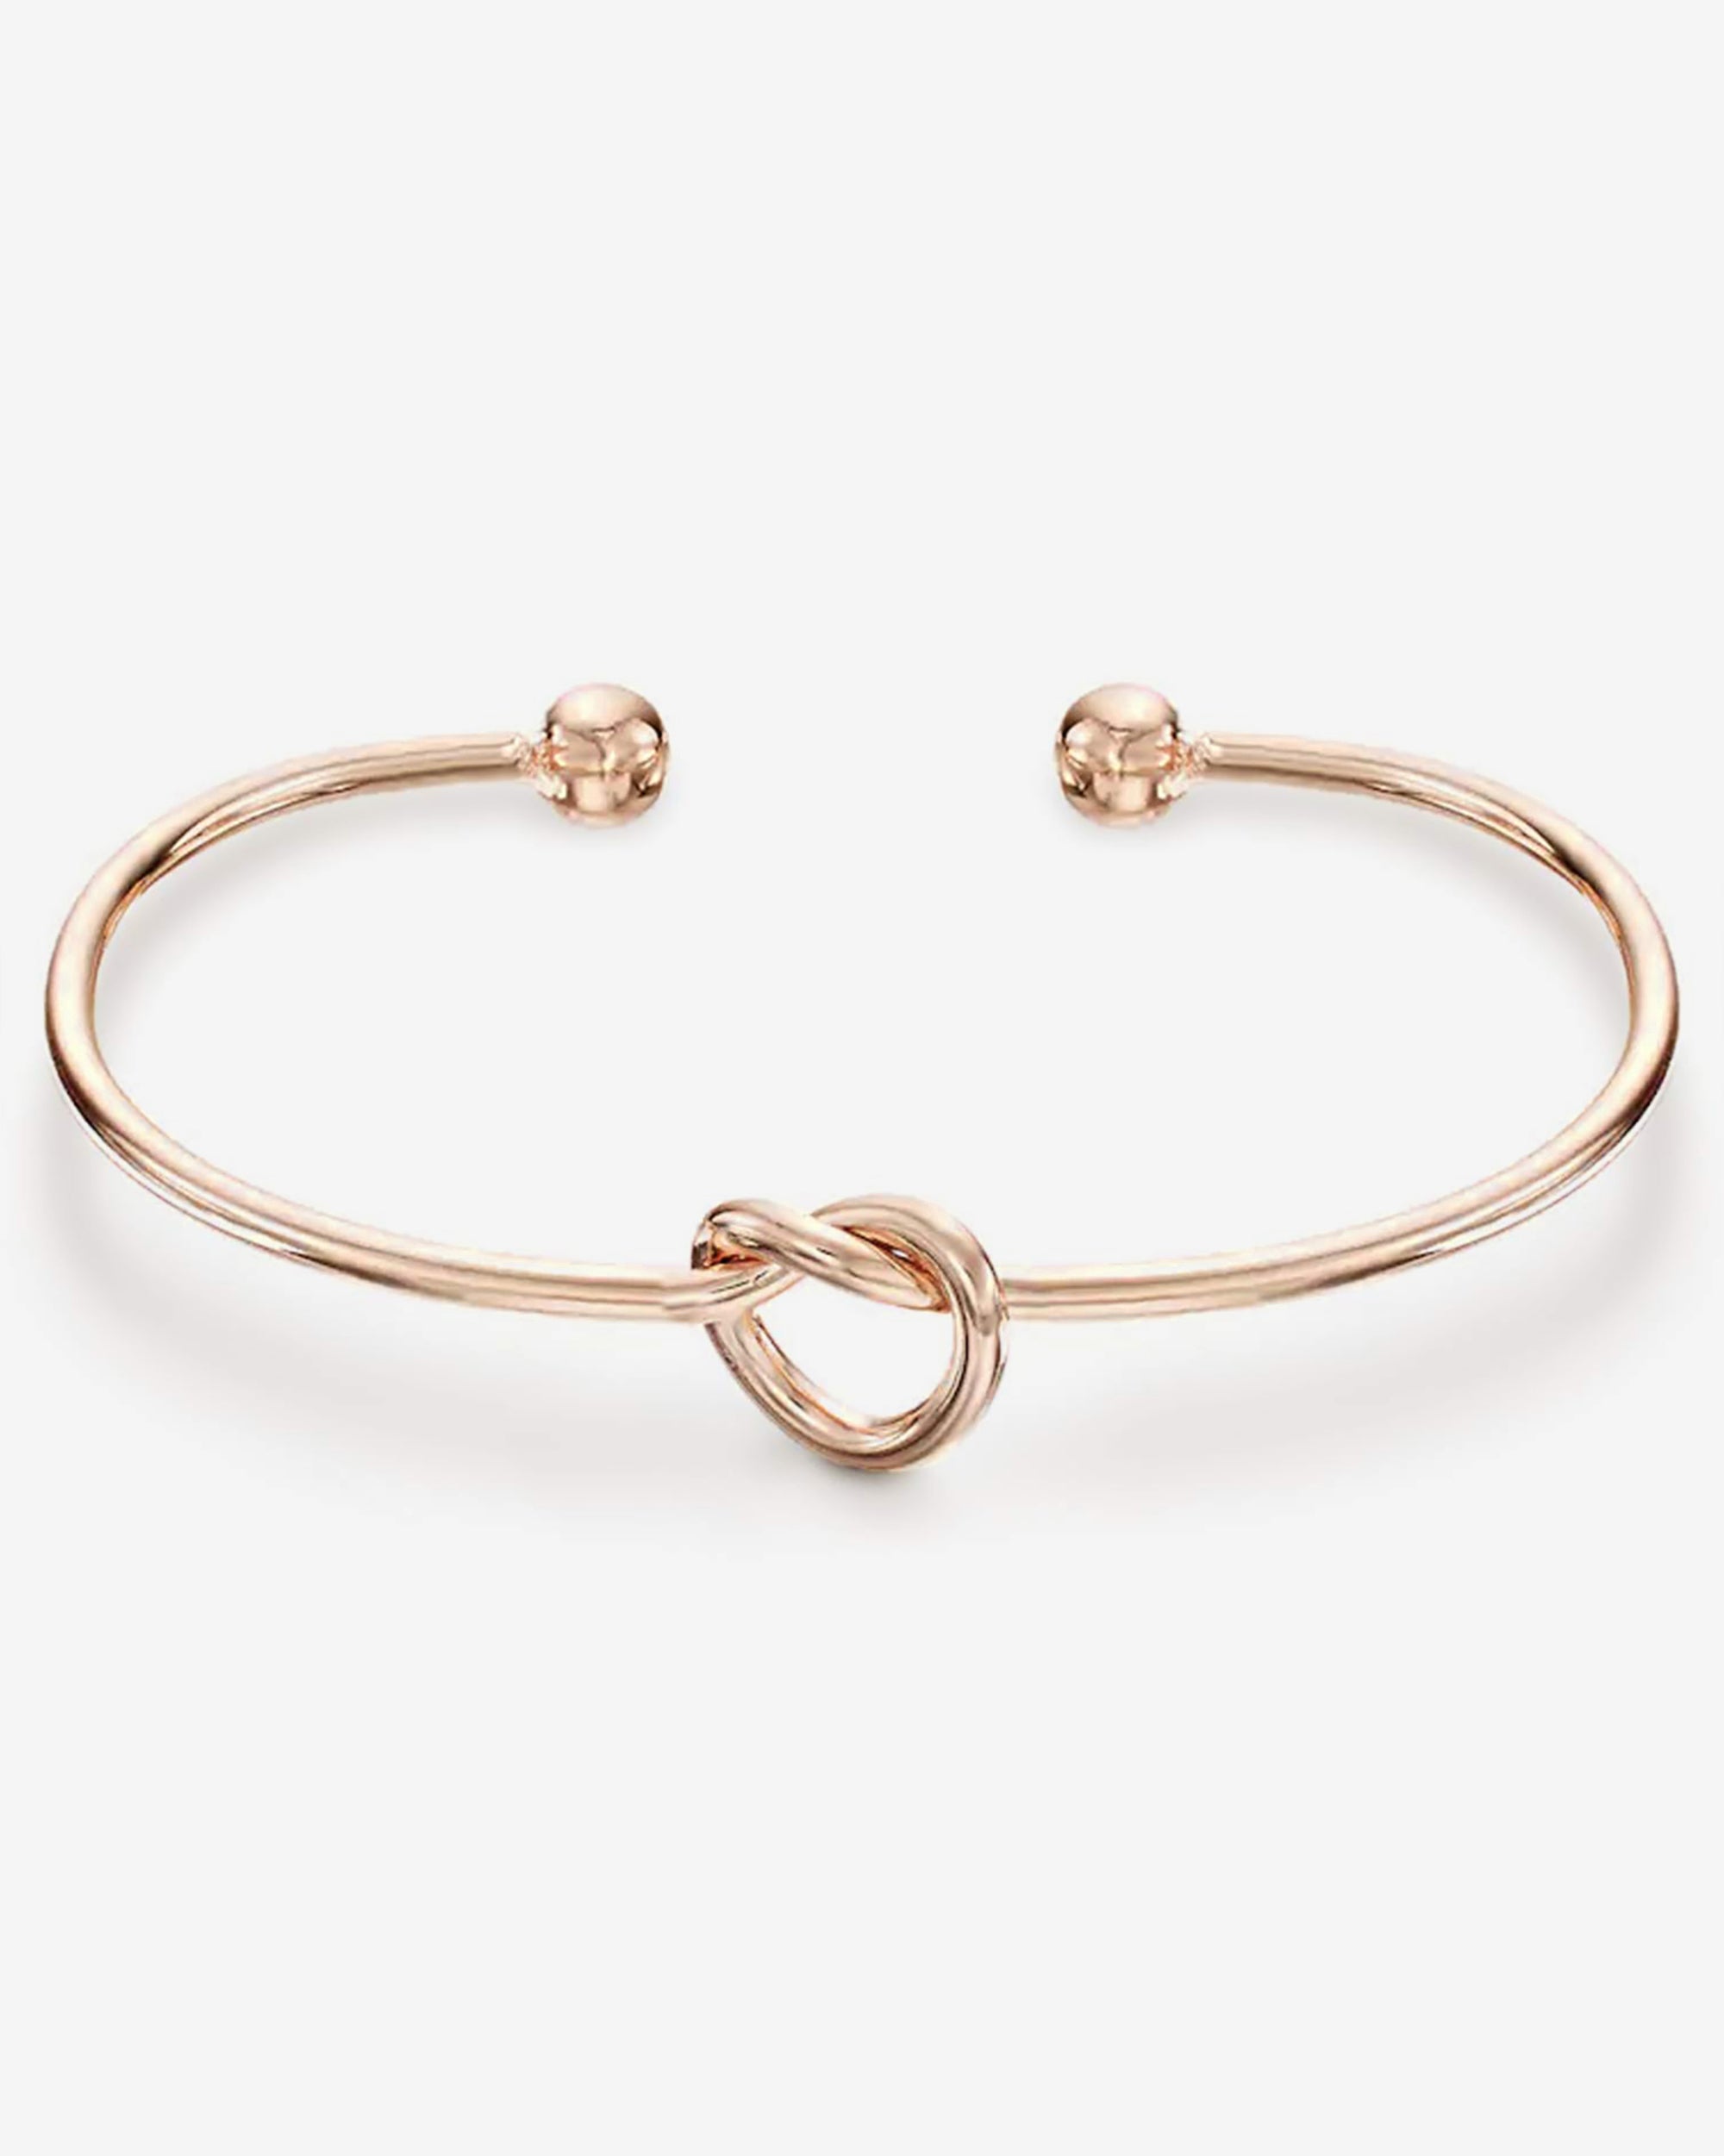 Shop 14K Gold Plated Love Knot Bangle | Affordable Everyday Bracelet ...